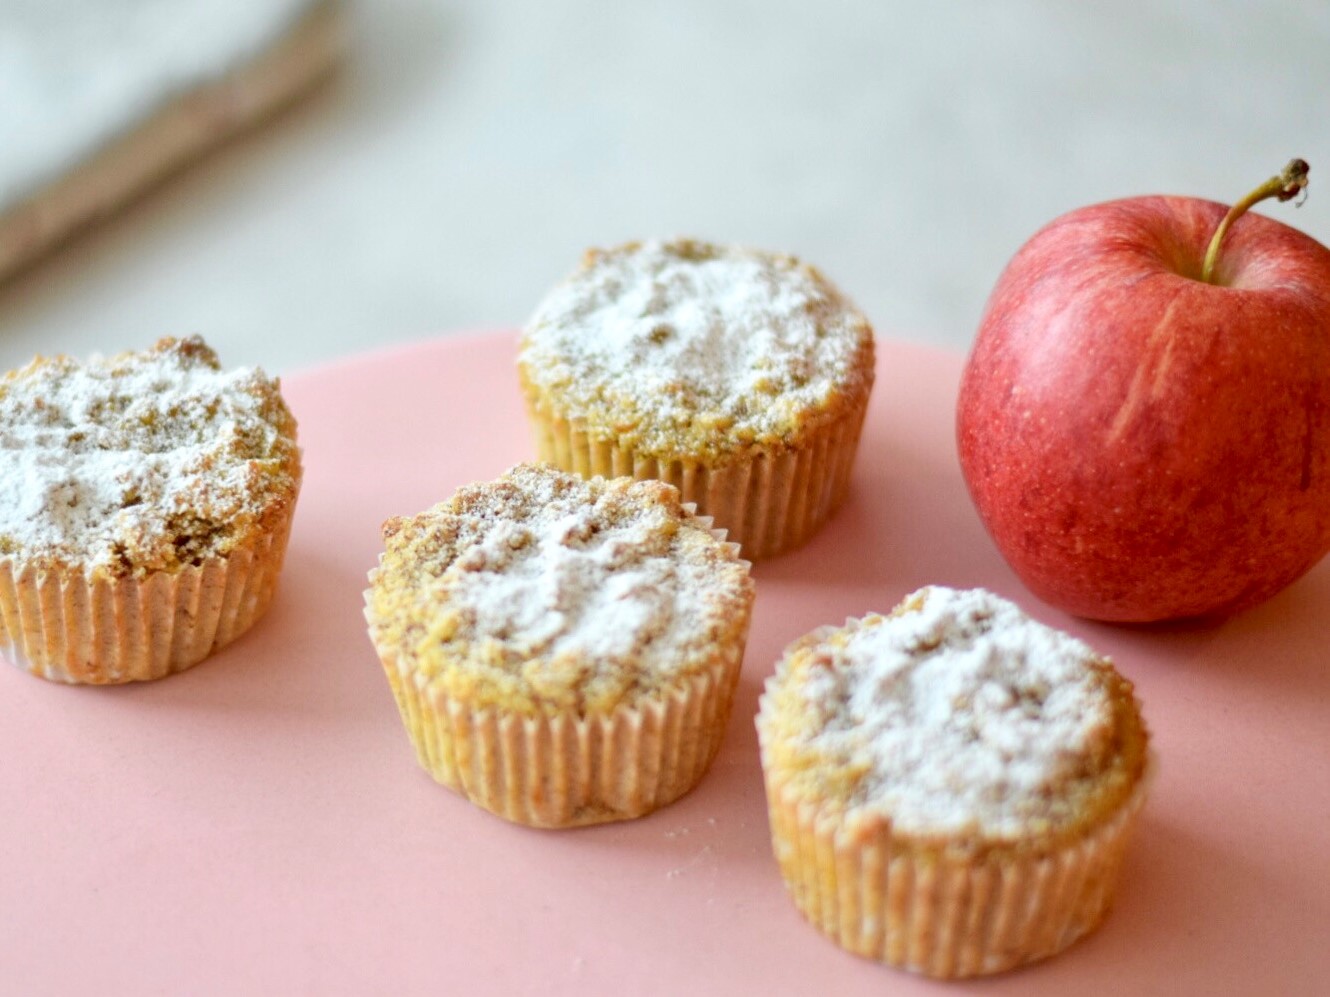 Glutenfreie Apfel-Mandel-Muffins - Ernährungsliebe.at - Diätologische ...